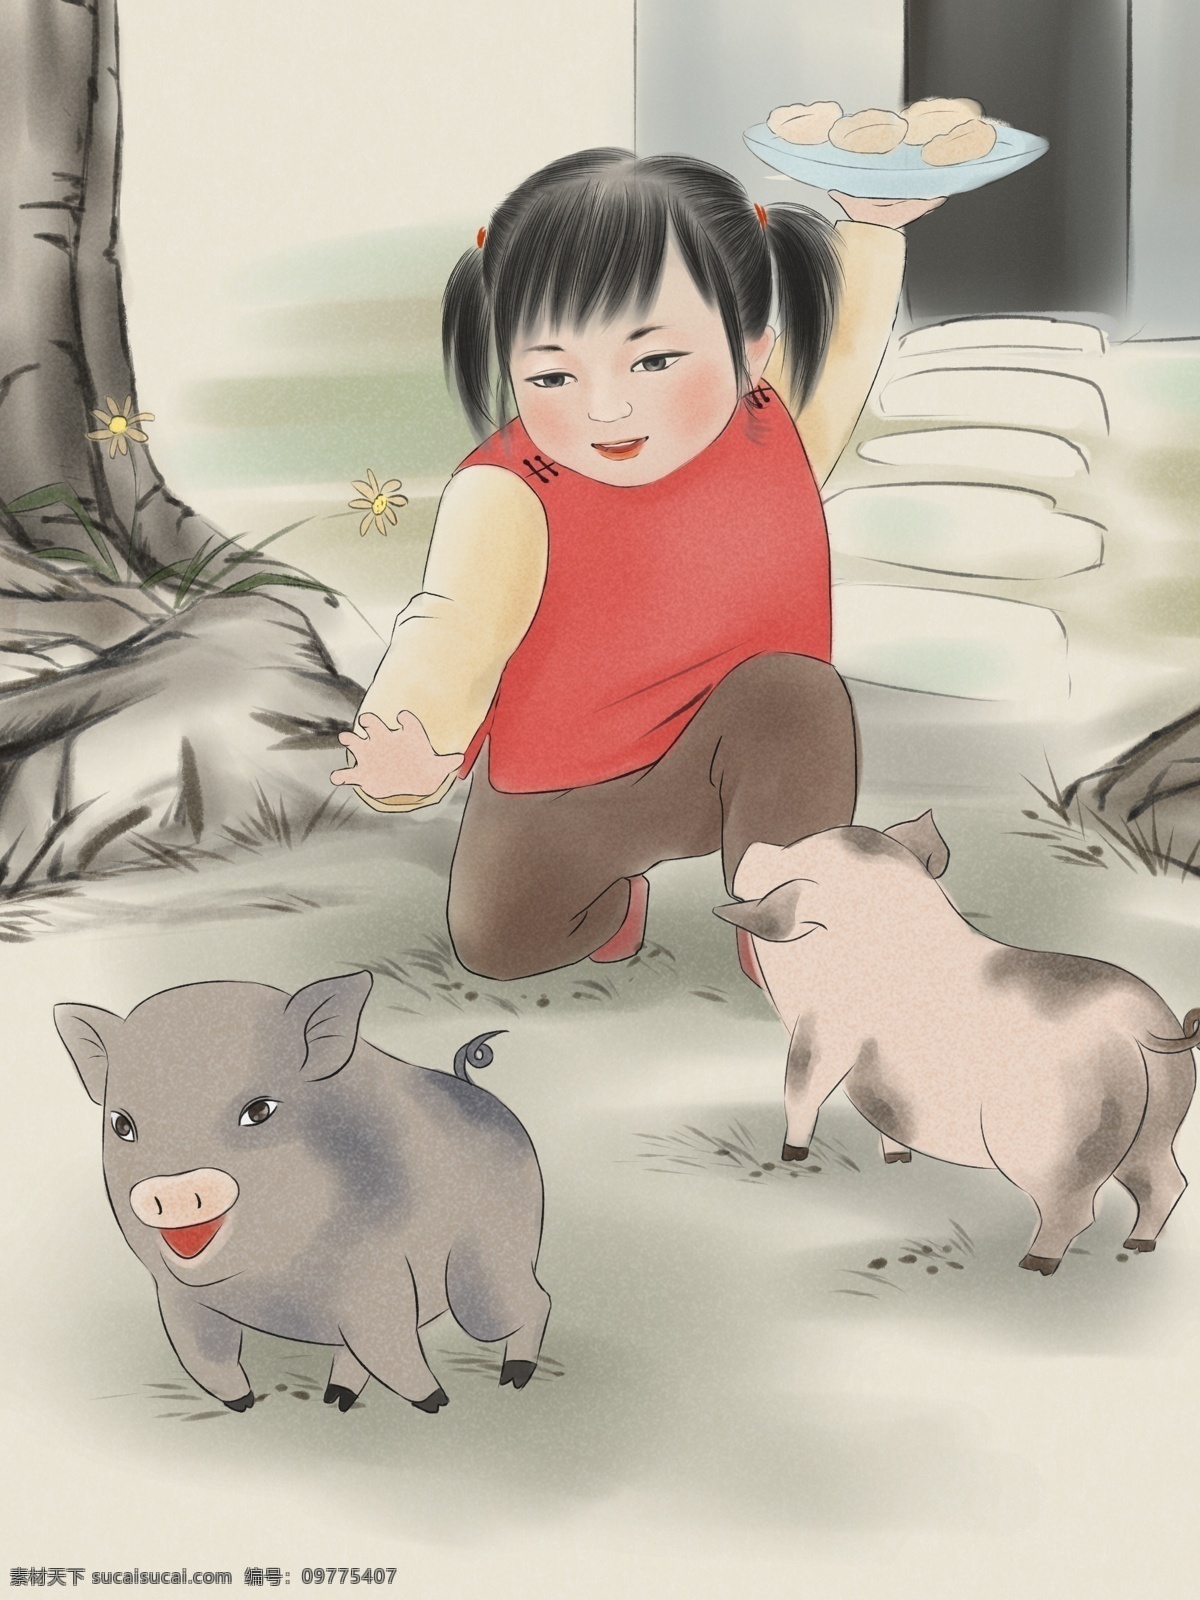 猪年 水墨 年画 猪 吃 饺子 工笔 国画 小女孩 猪猪 新年